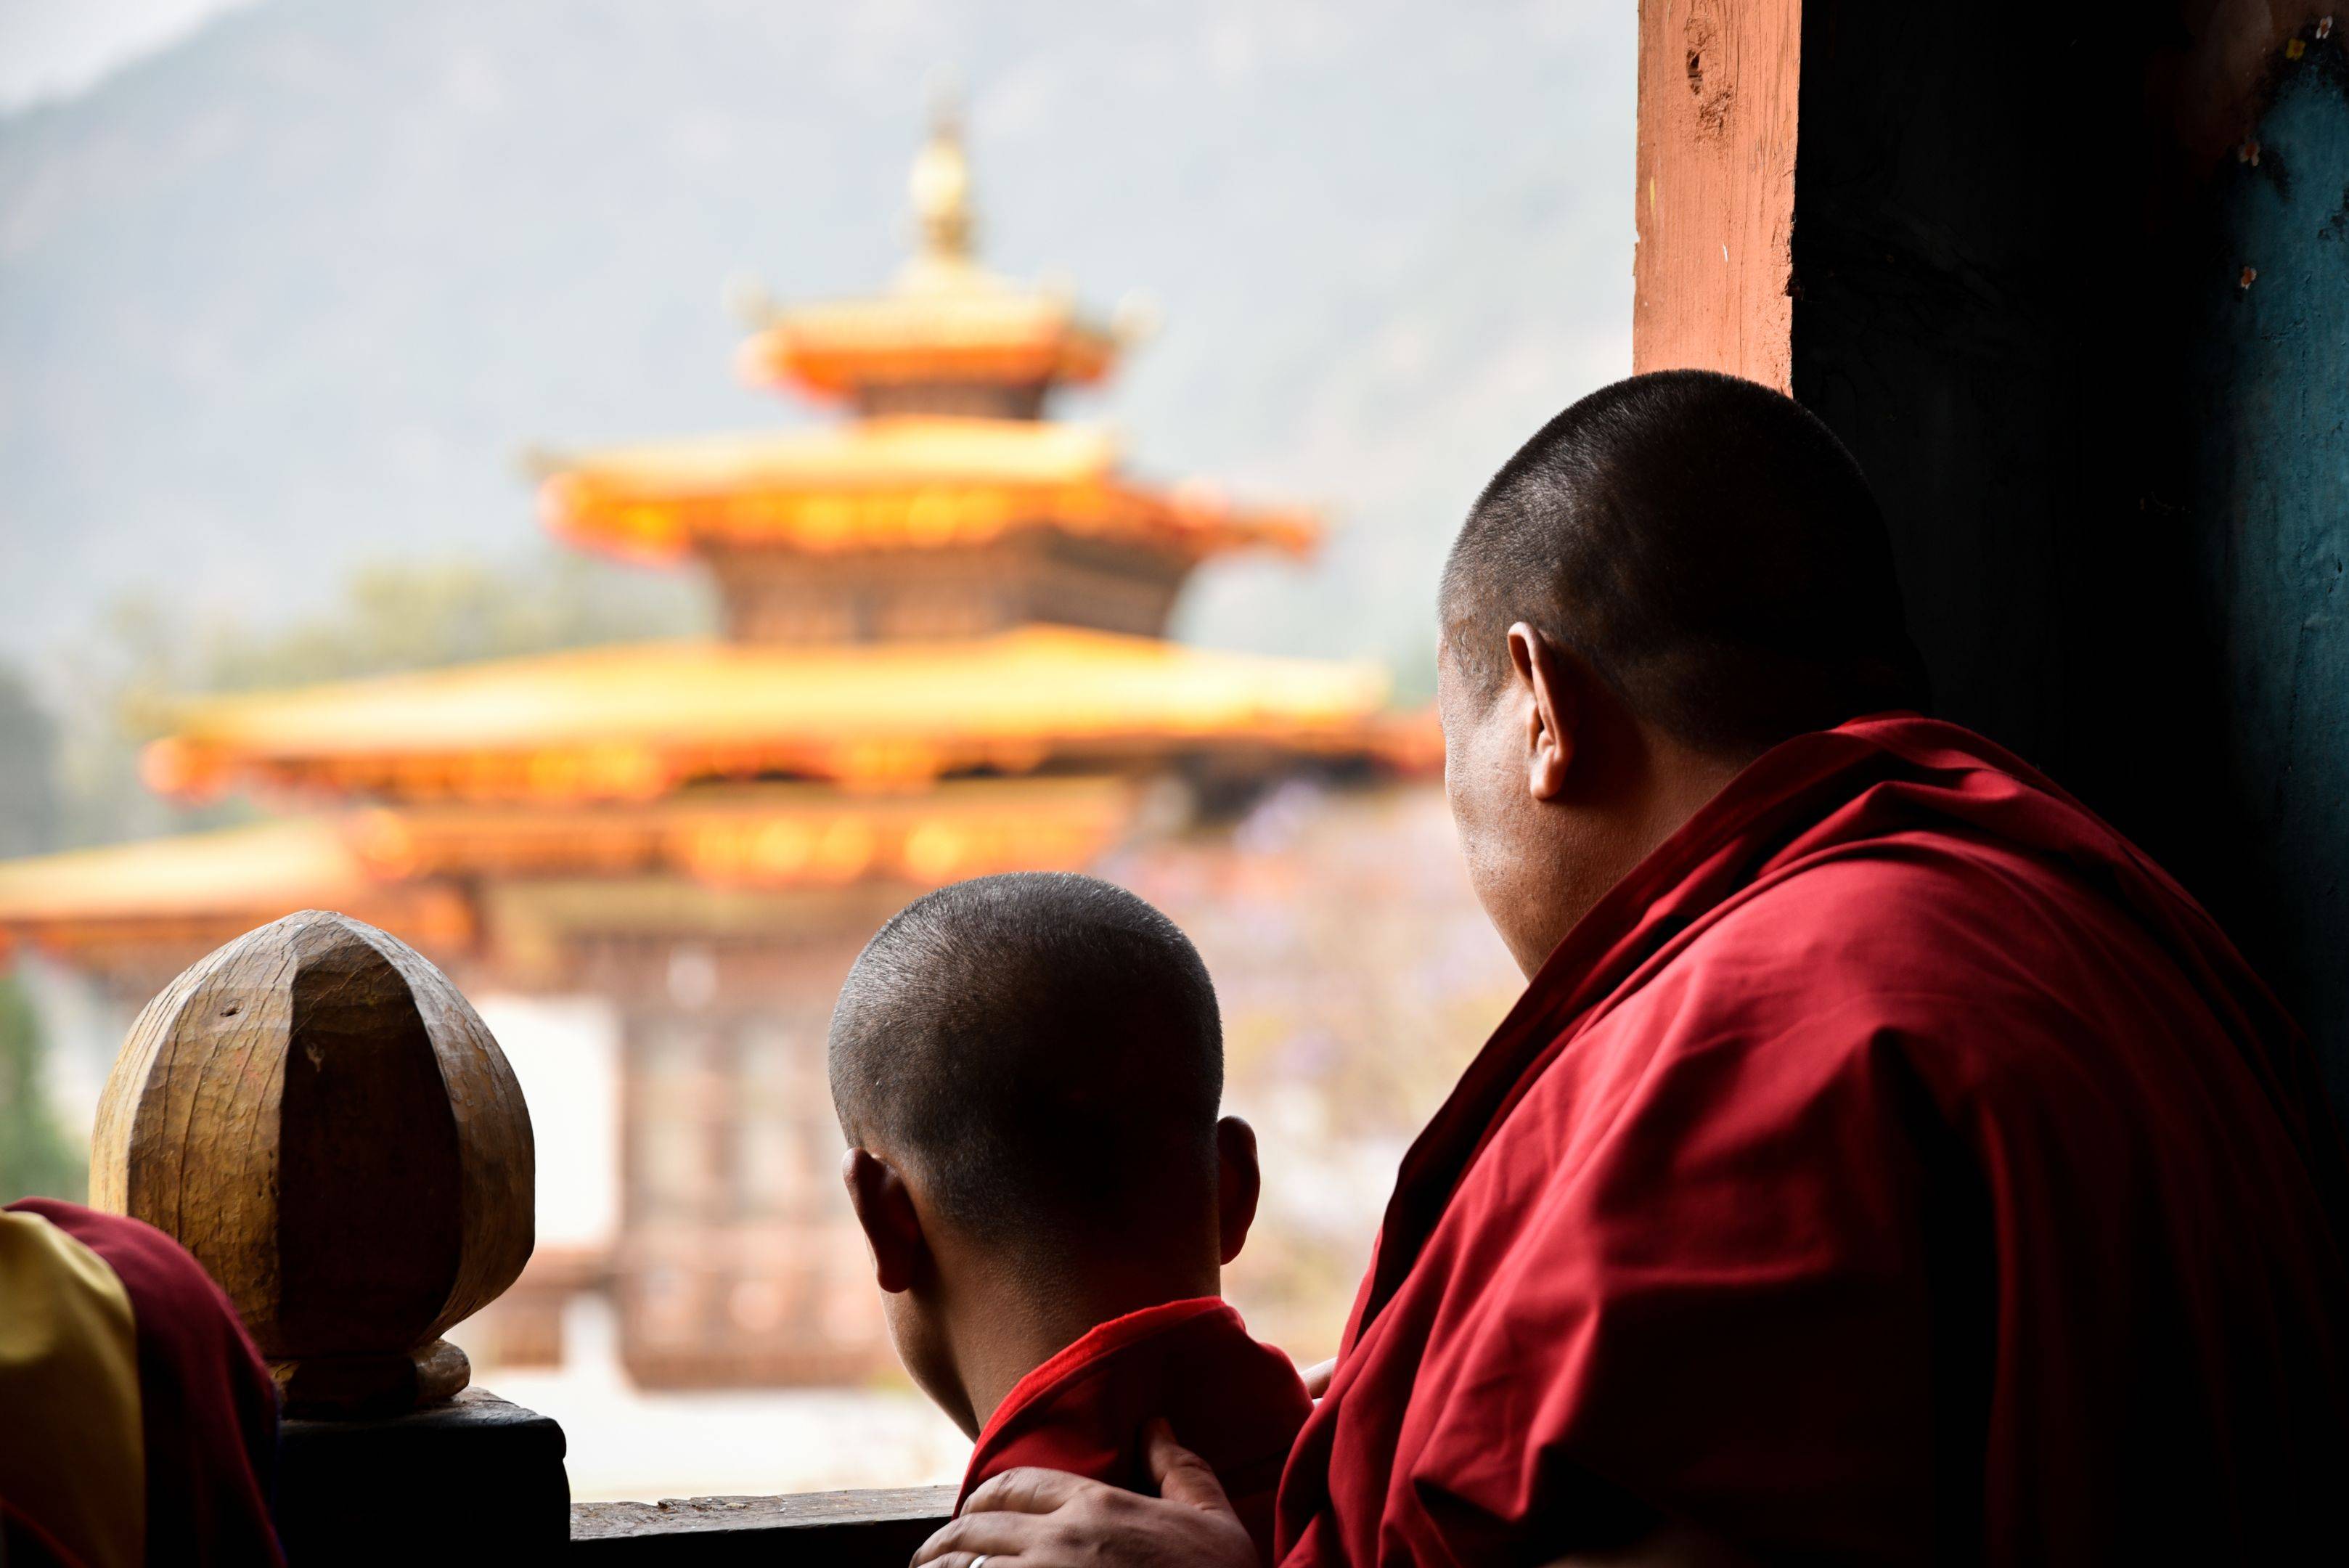 Visita guidata a Thimpu: il tiro con l’arco, le tradizioni e l’animale simbolo del Bhutan